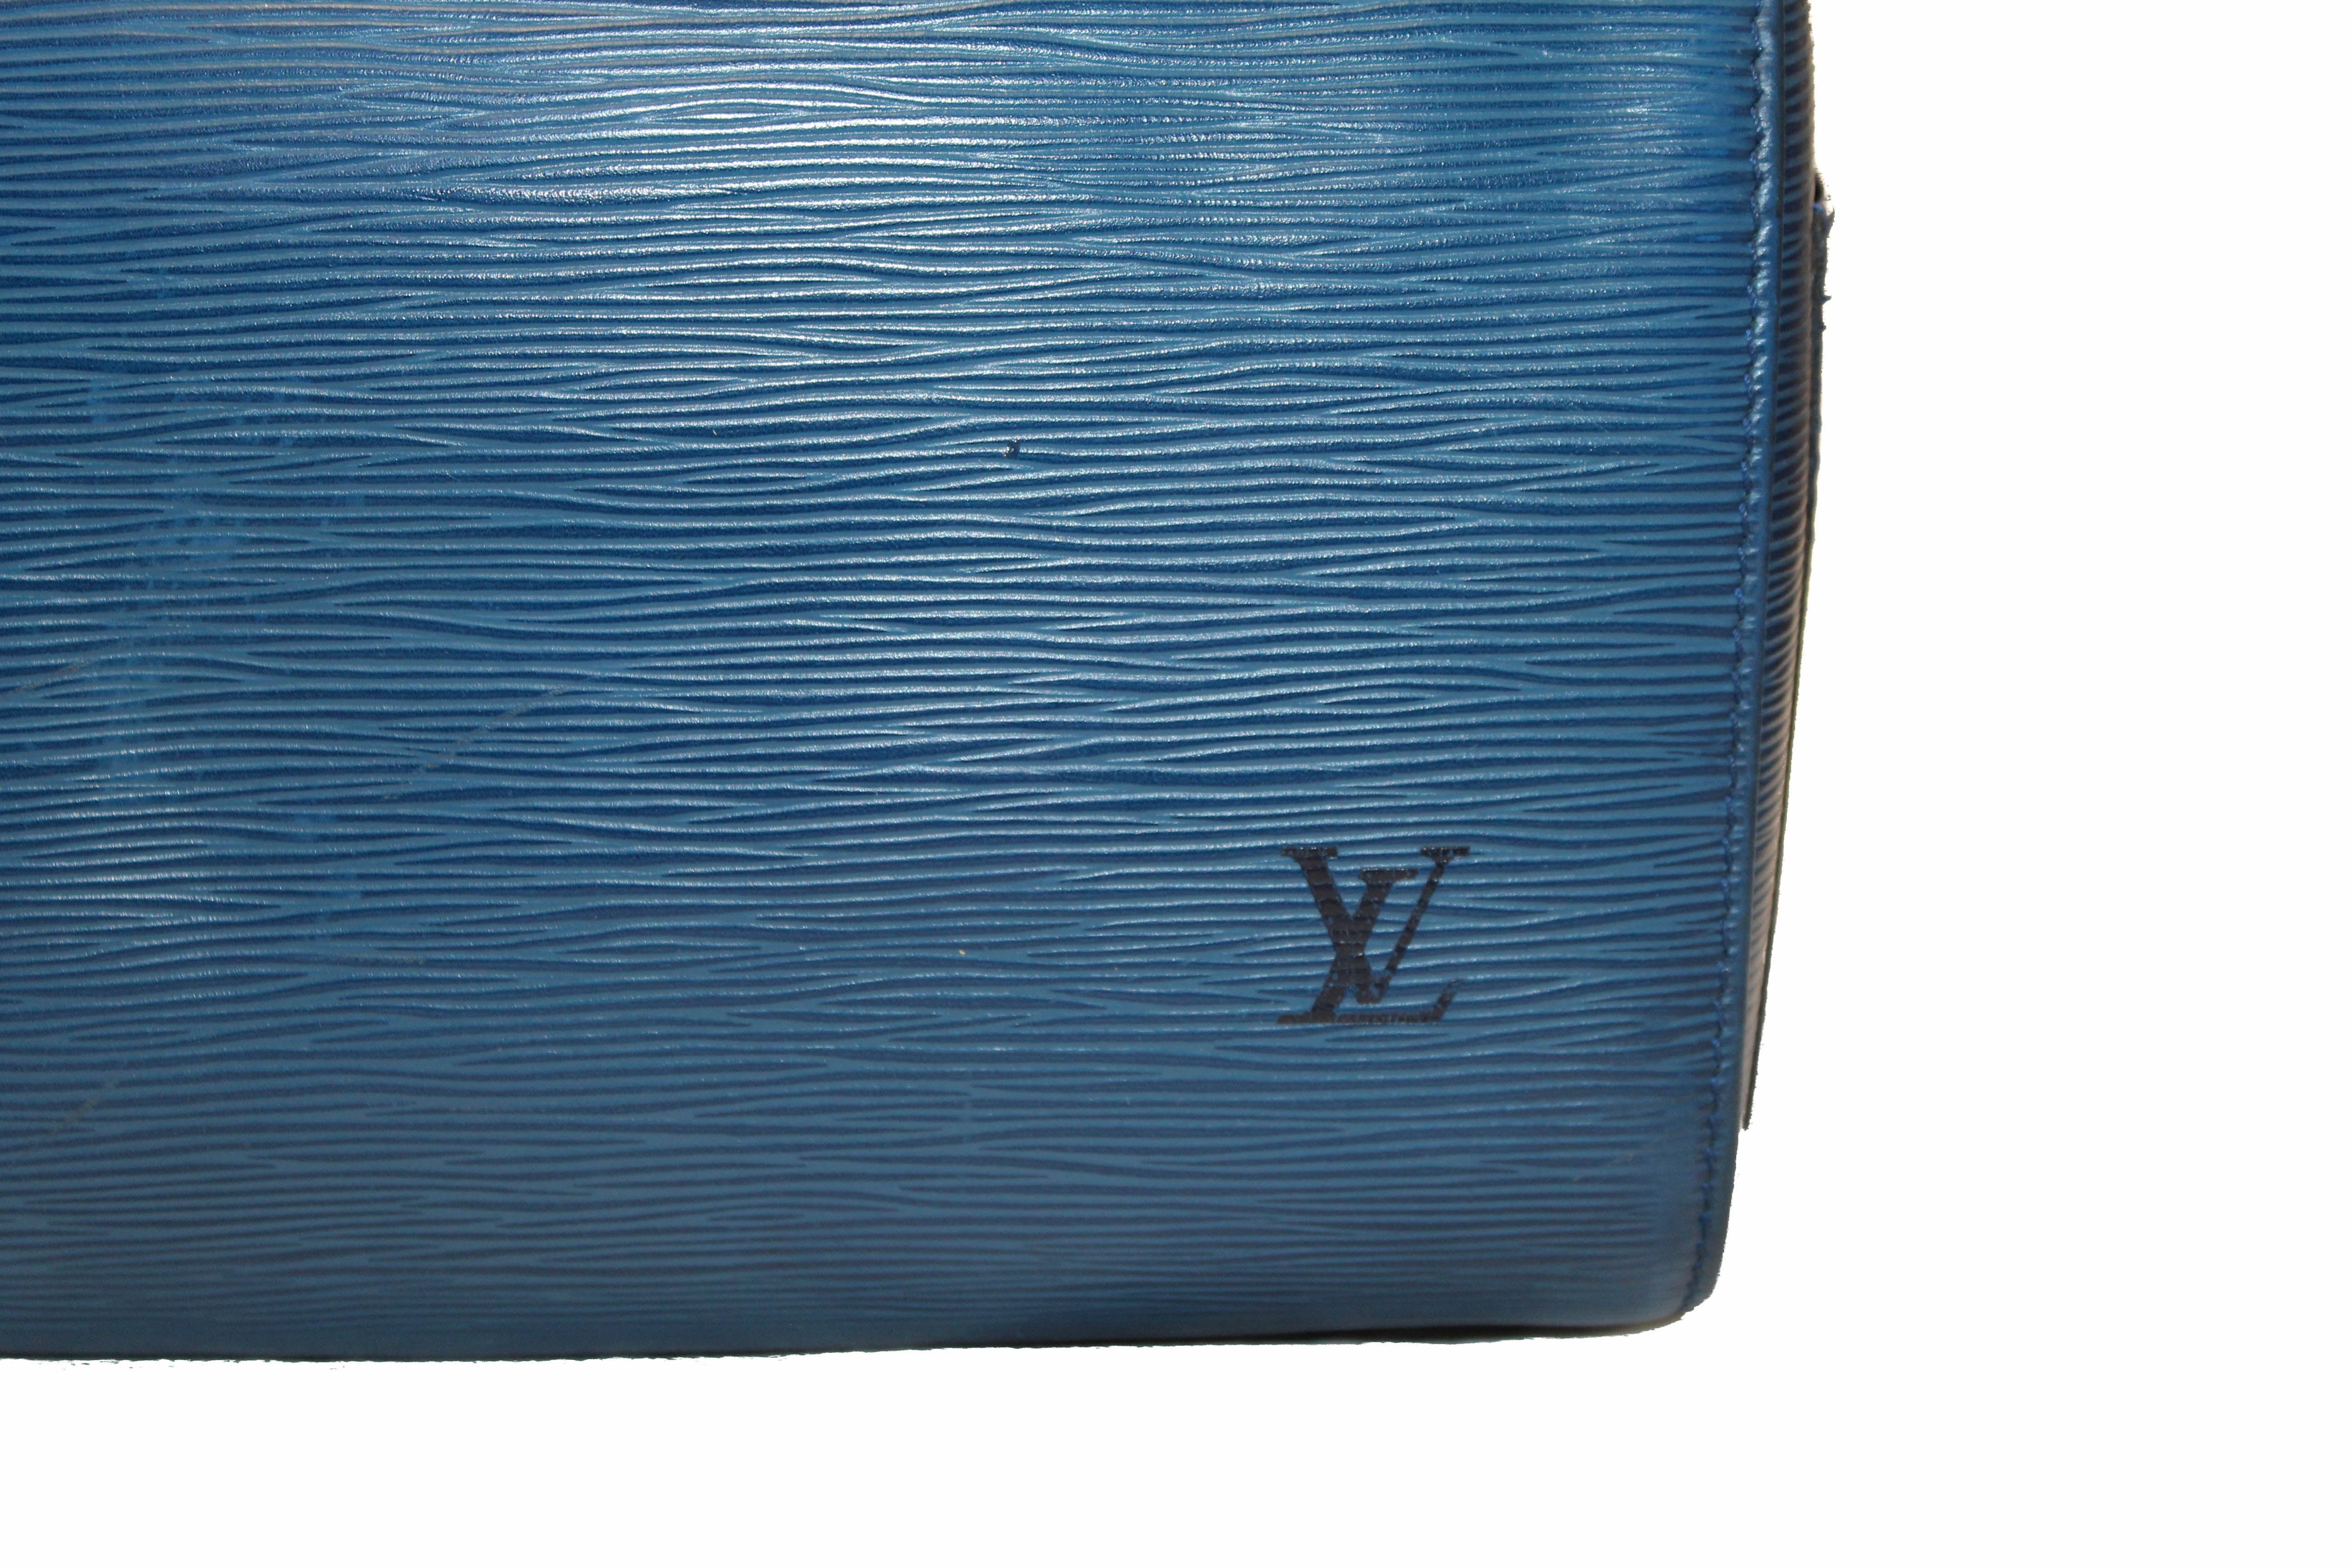 Louis Vuitton 2000s Blue Epi Speedy 30 · INTO